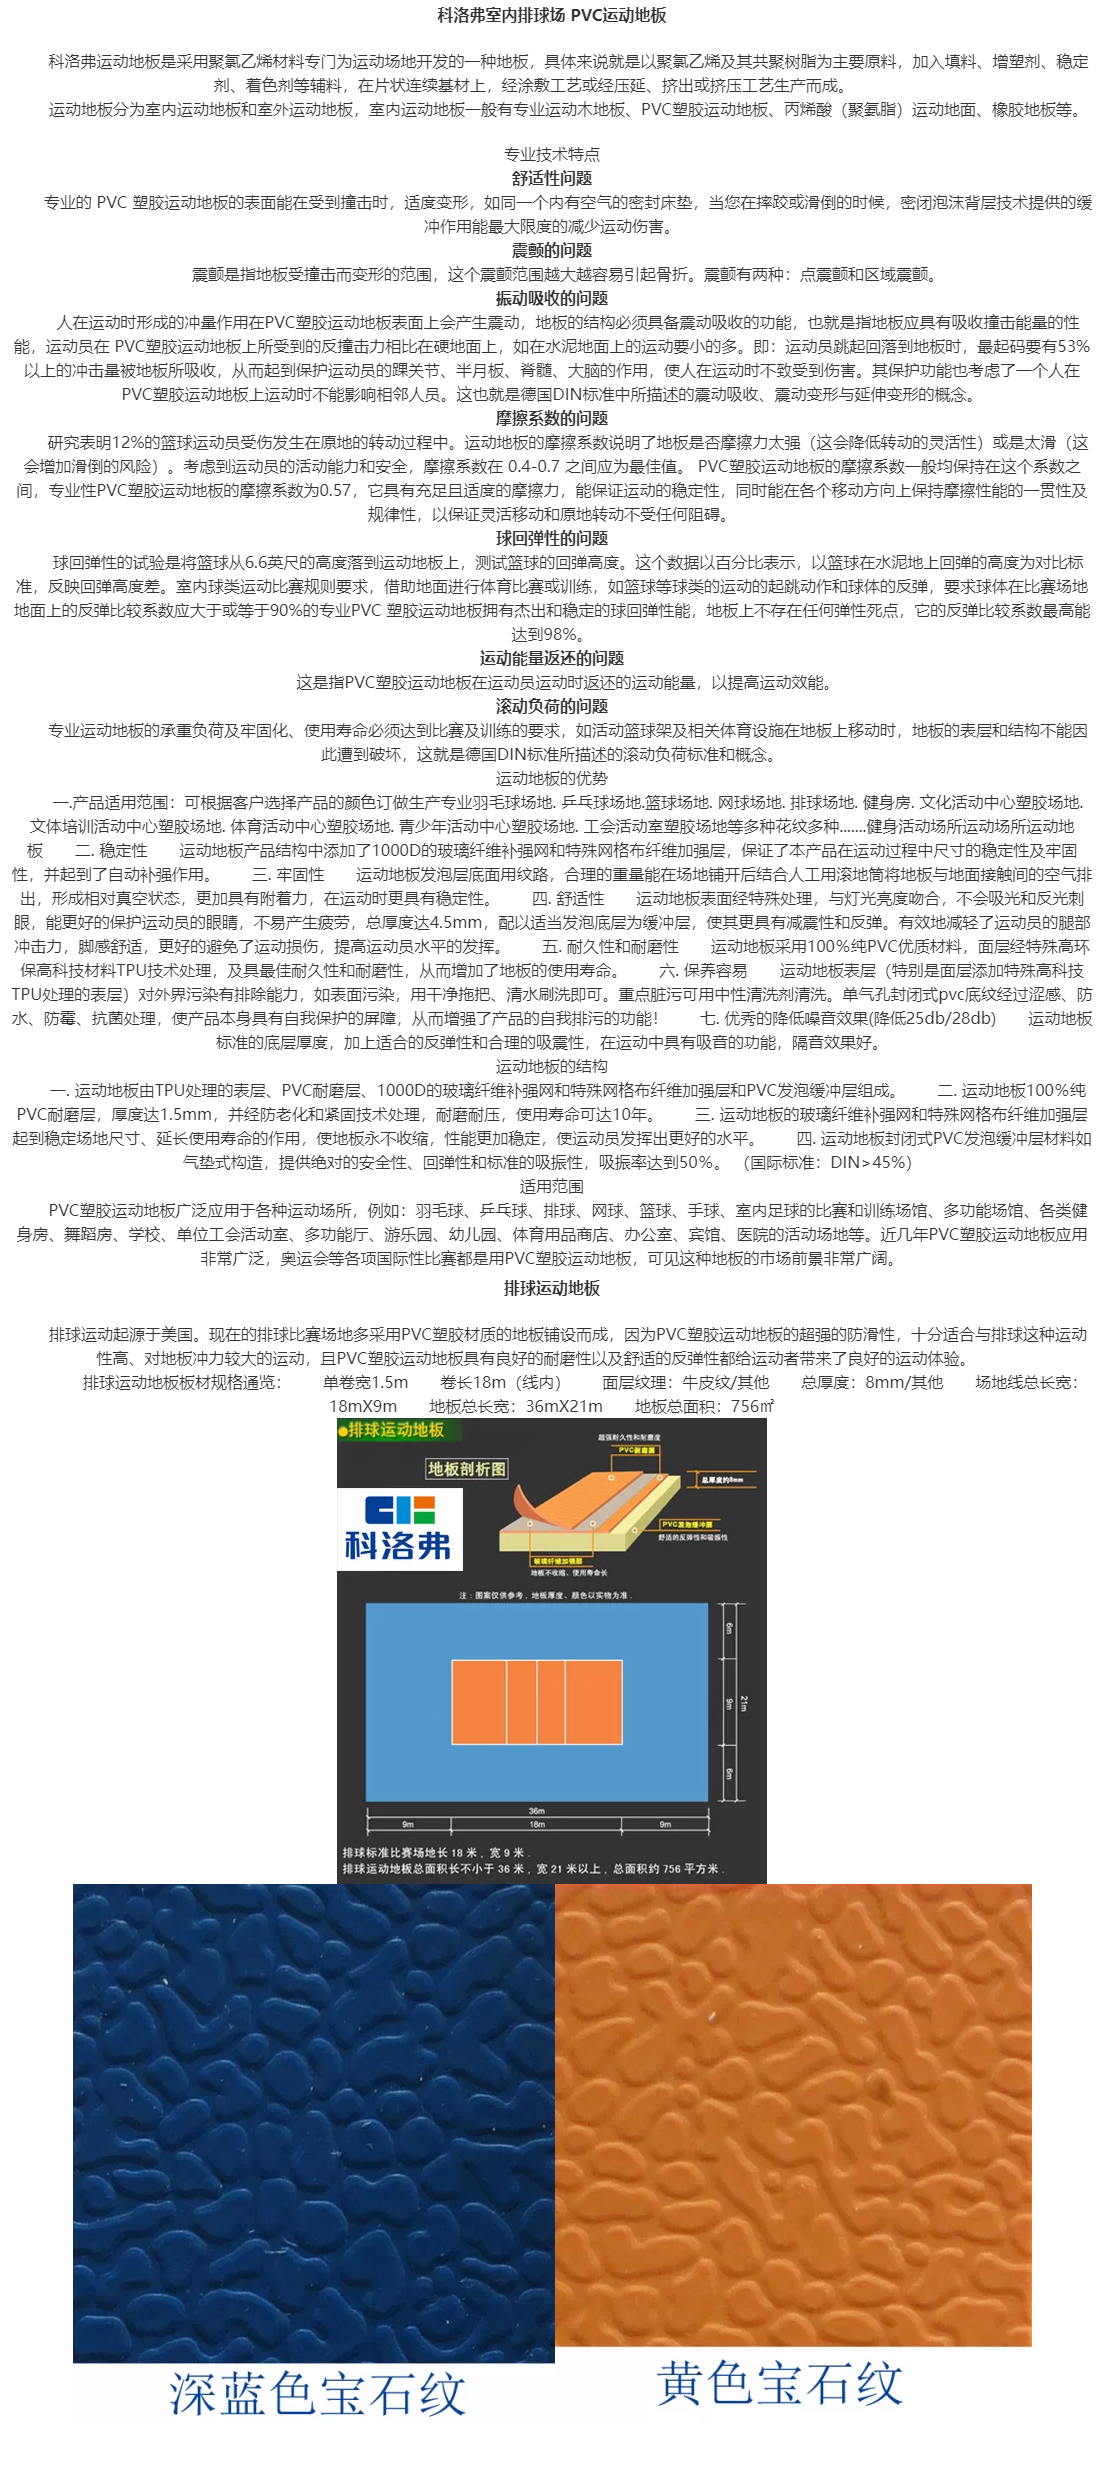 科洛弗室内排球场 PVC运动地板,贵州峰畅建筑工程有限公司.png